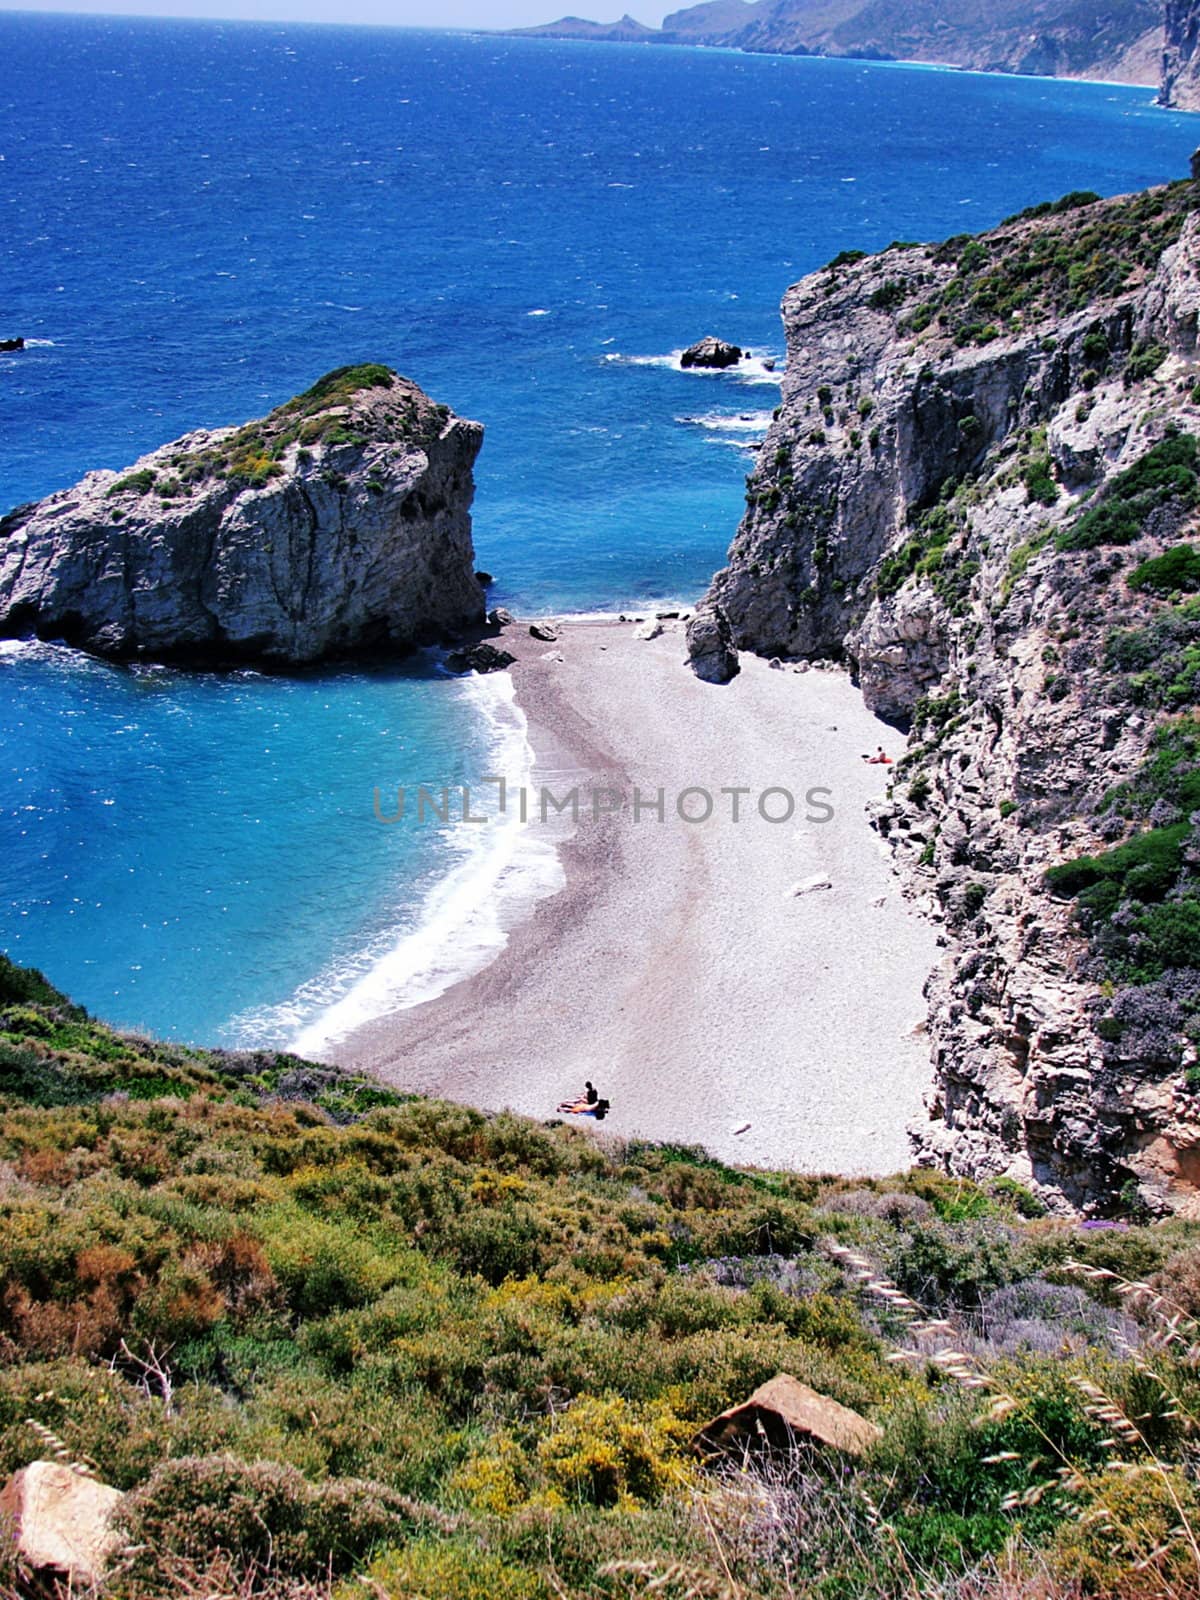 Kythery coastline in Greece by ziggysofi